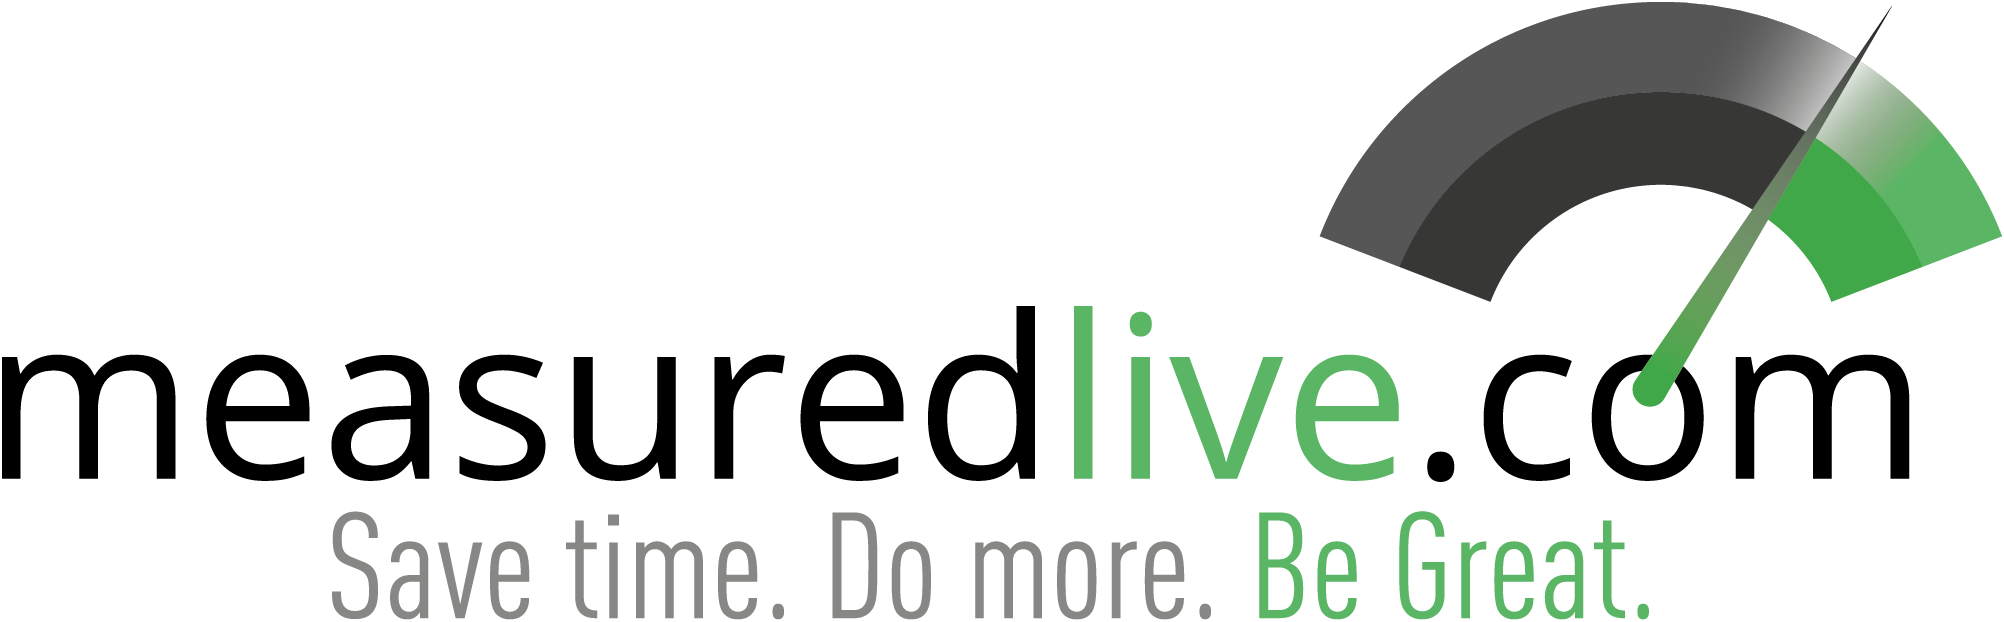 MeasuredLive Logo with tagline